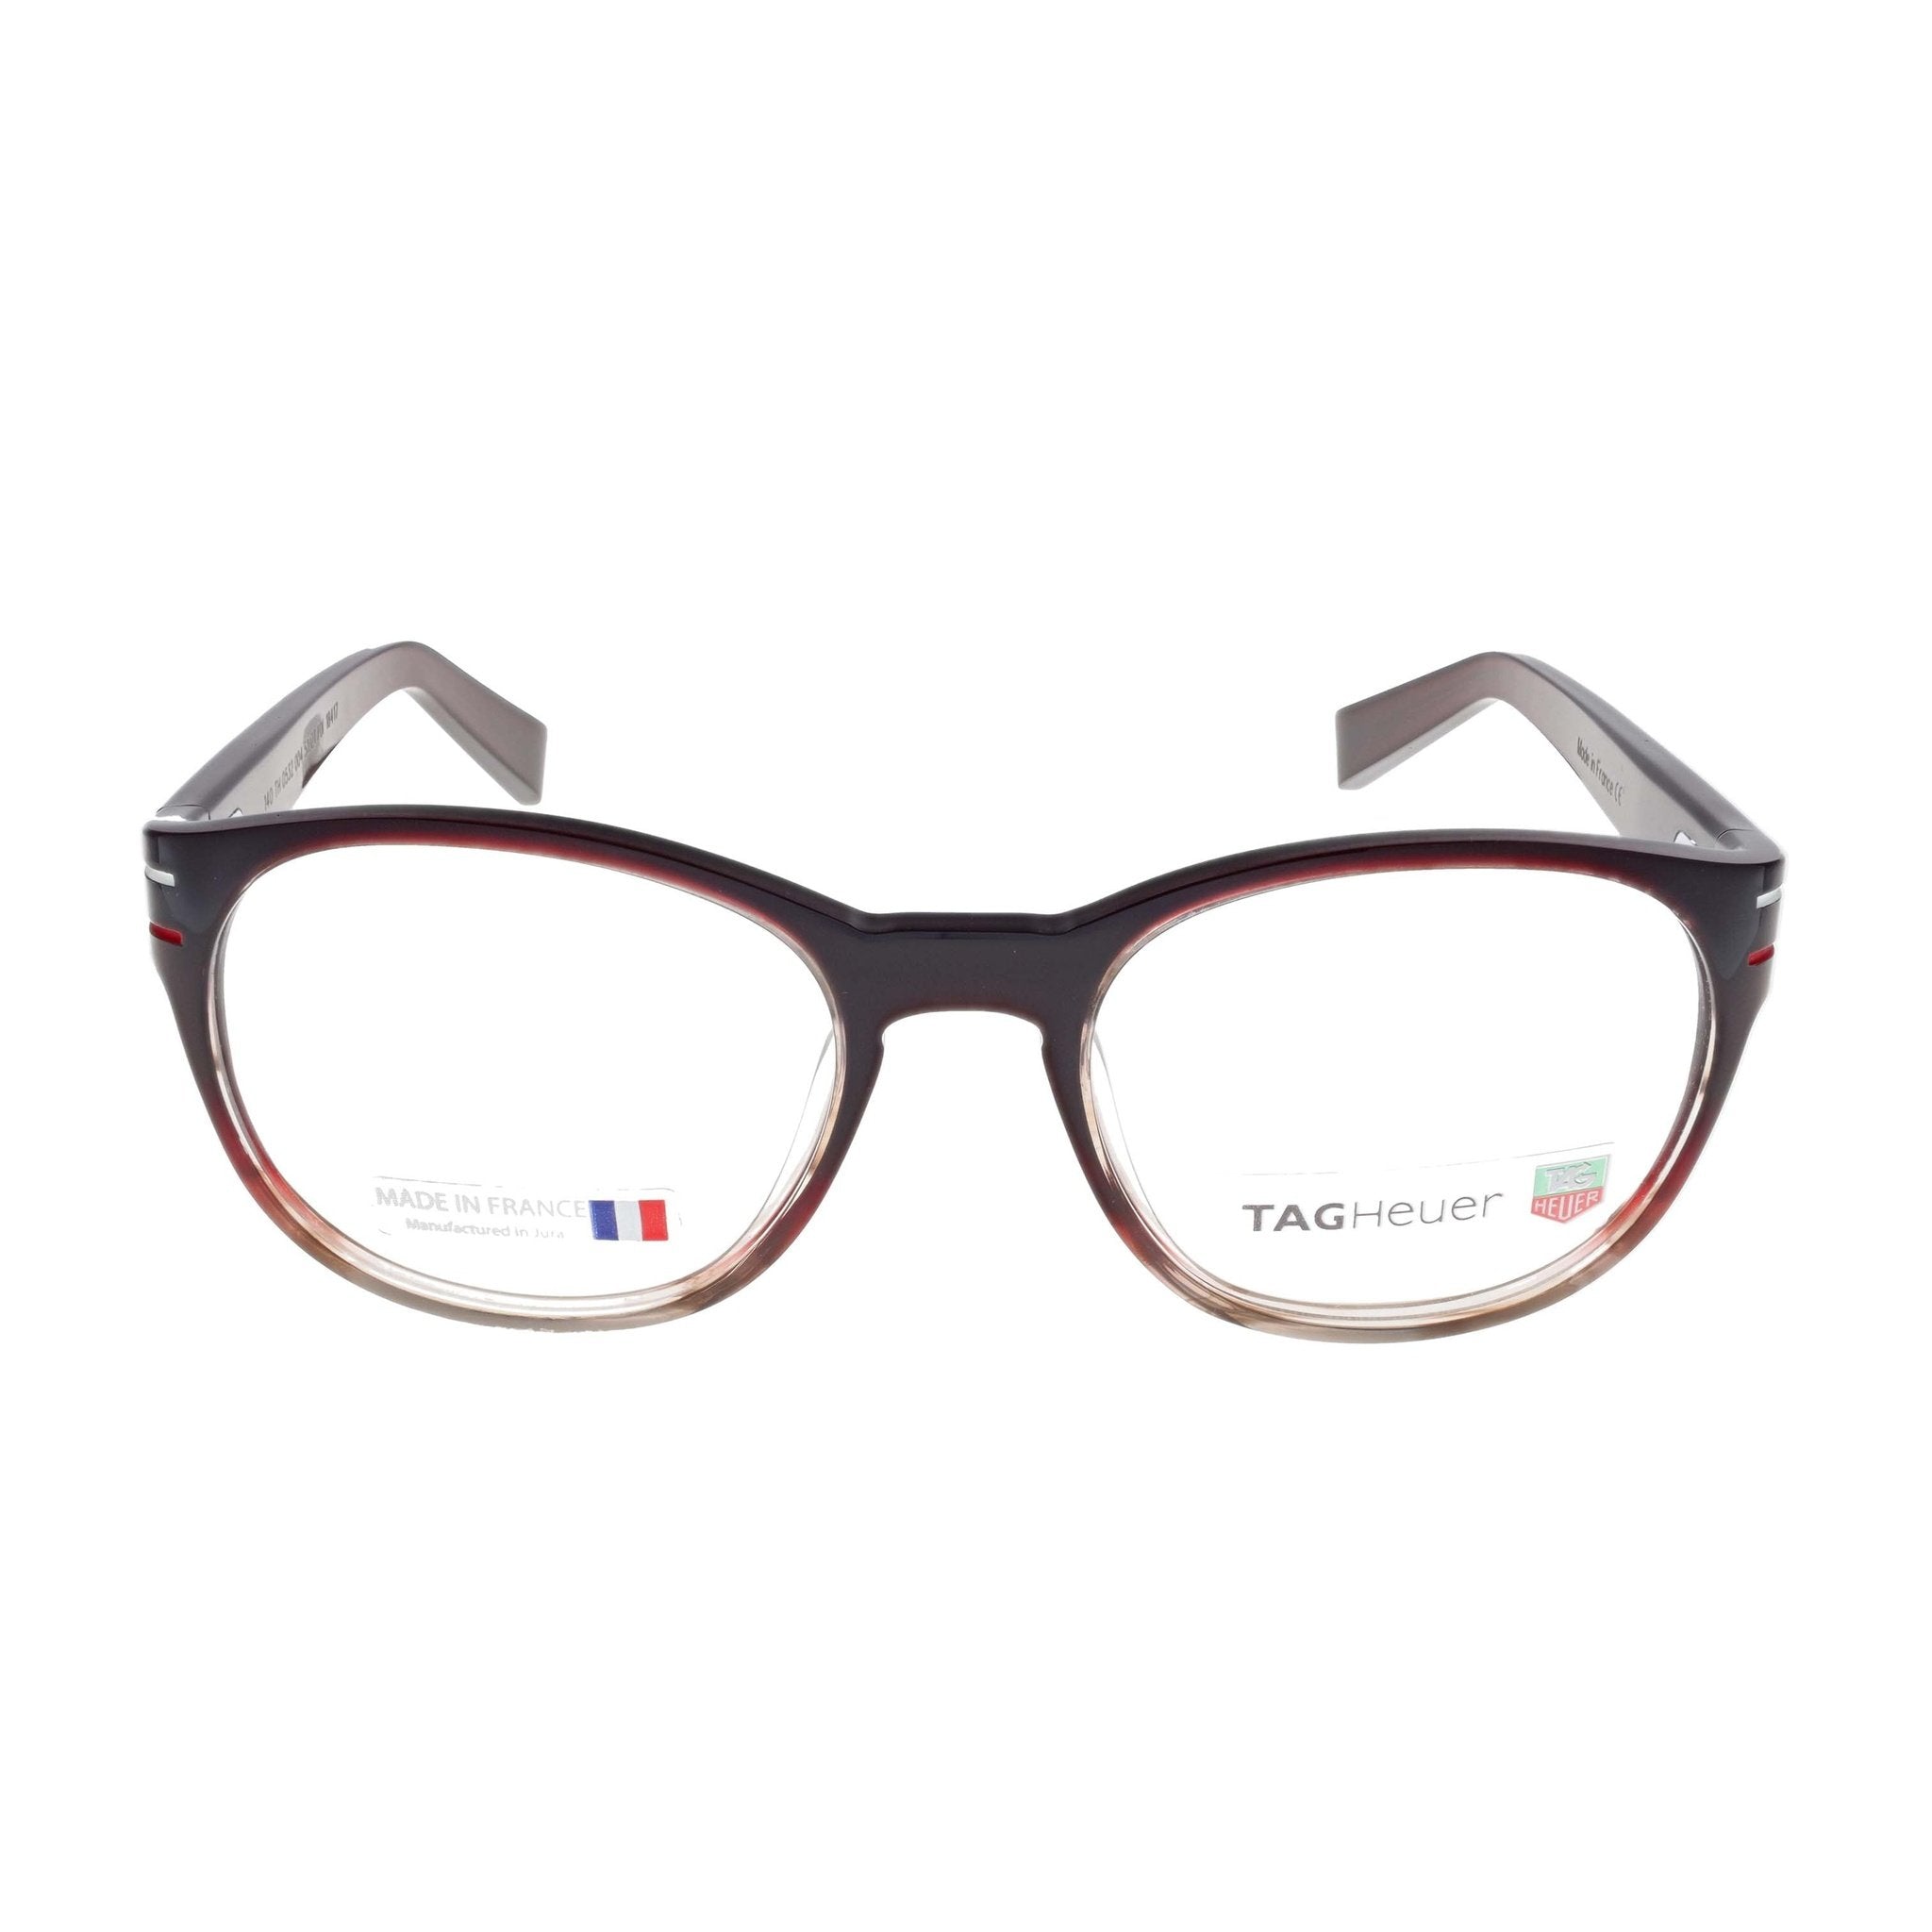 TAG Heuer Eyeglasses - 660532 - Bordeaux